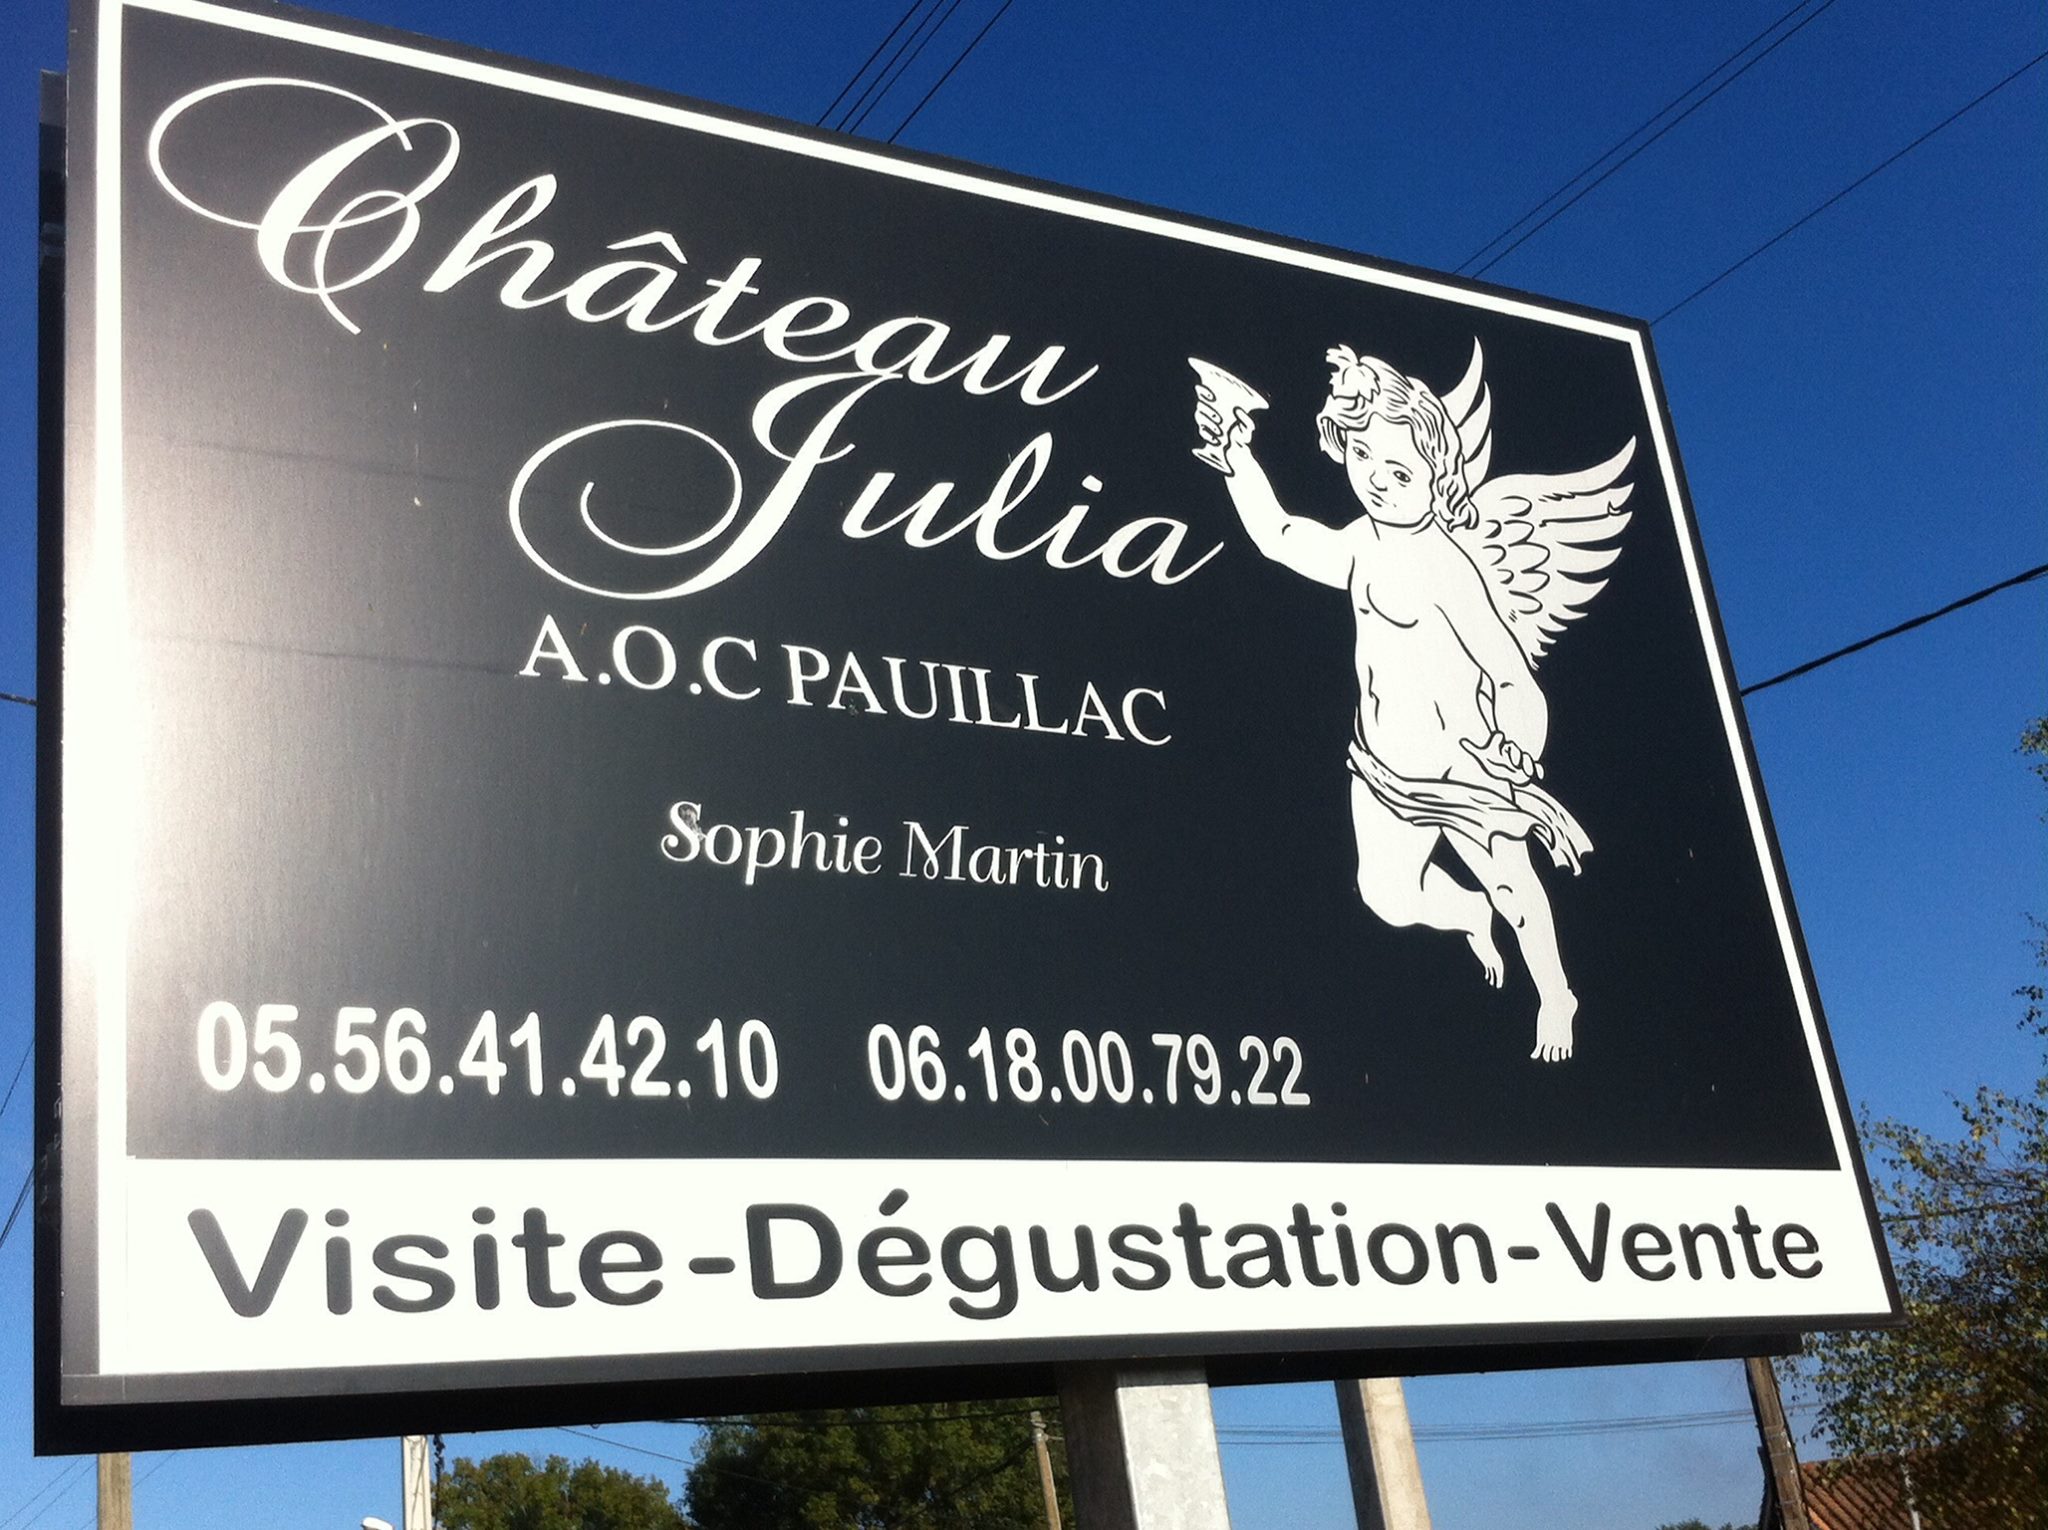 Château Julia